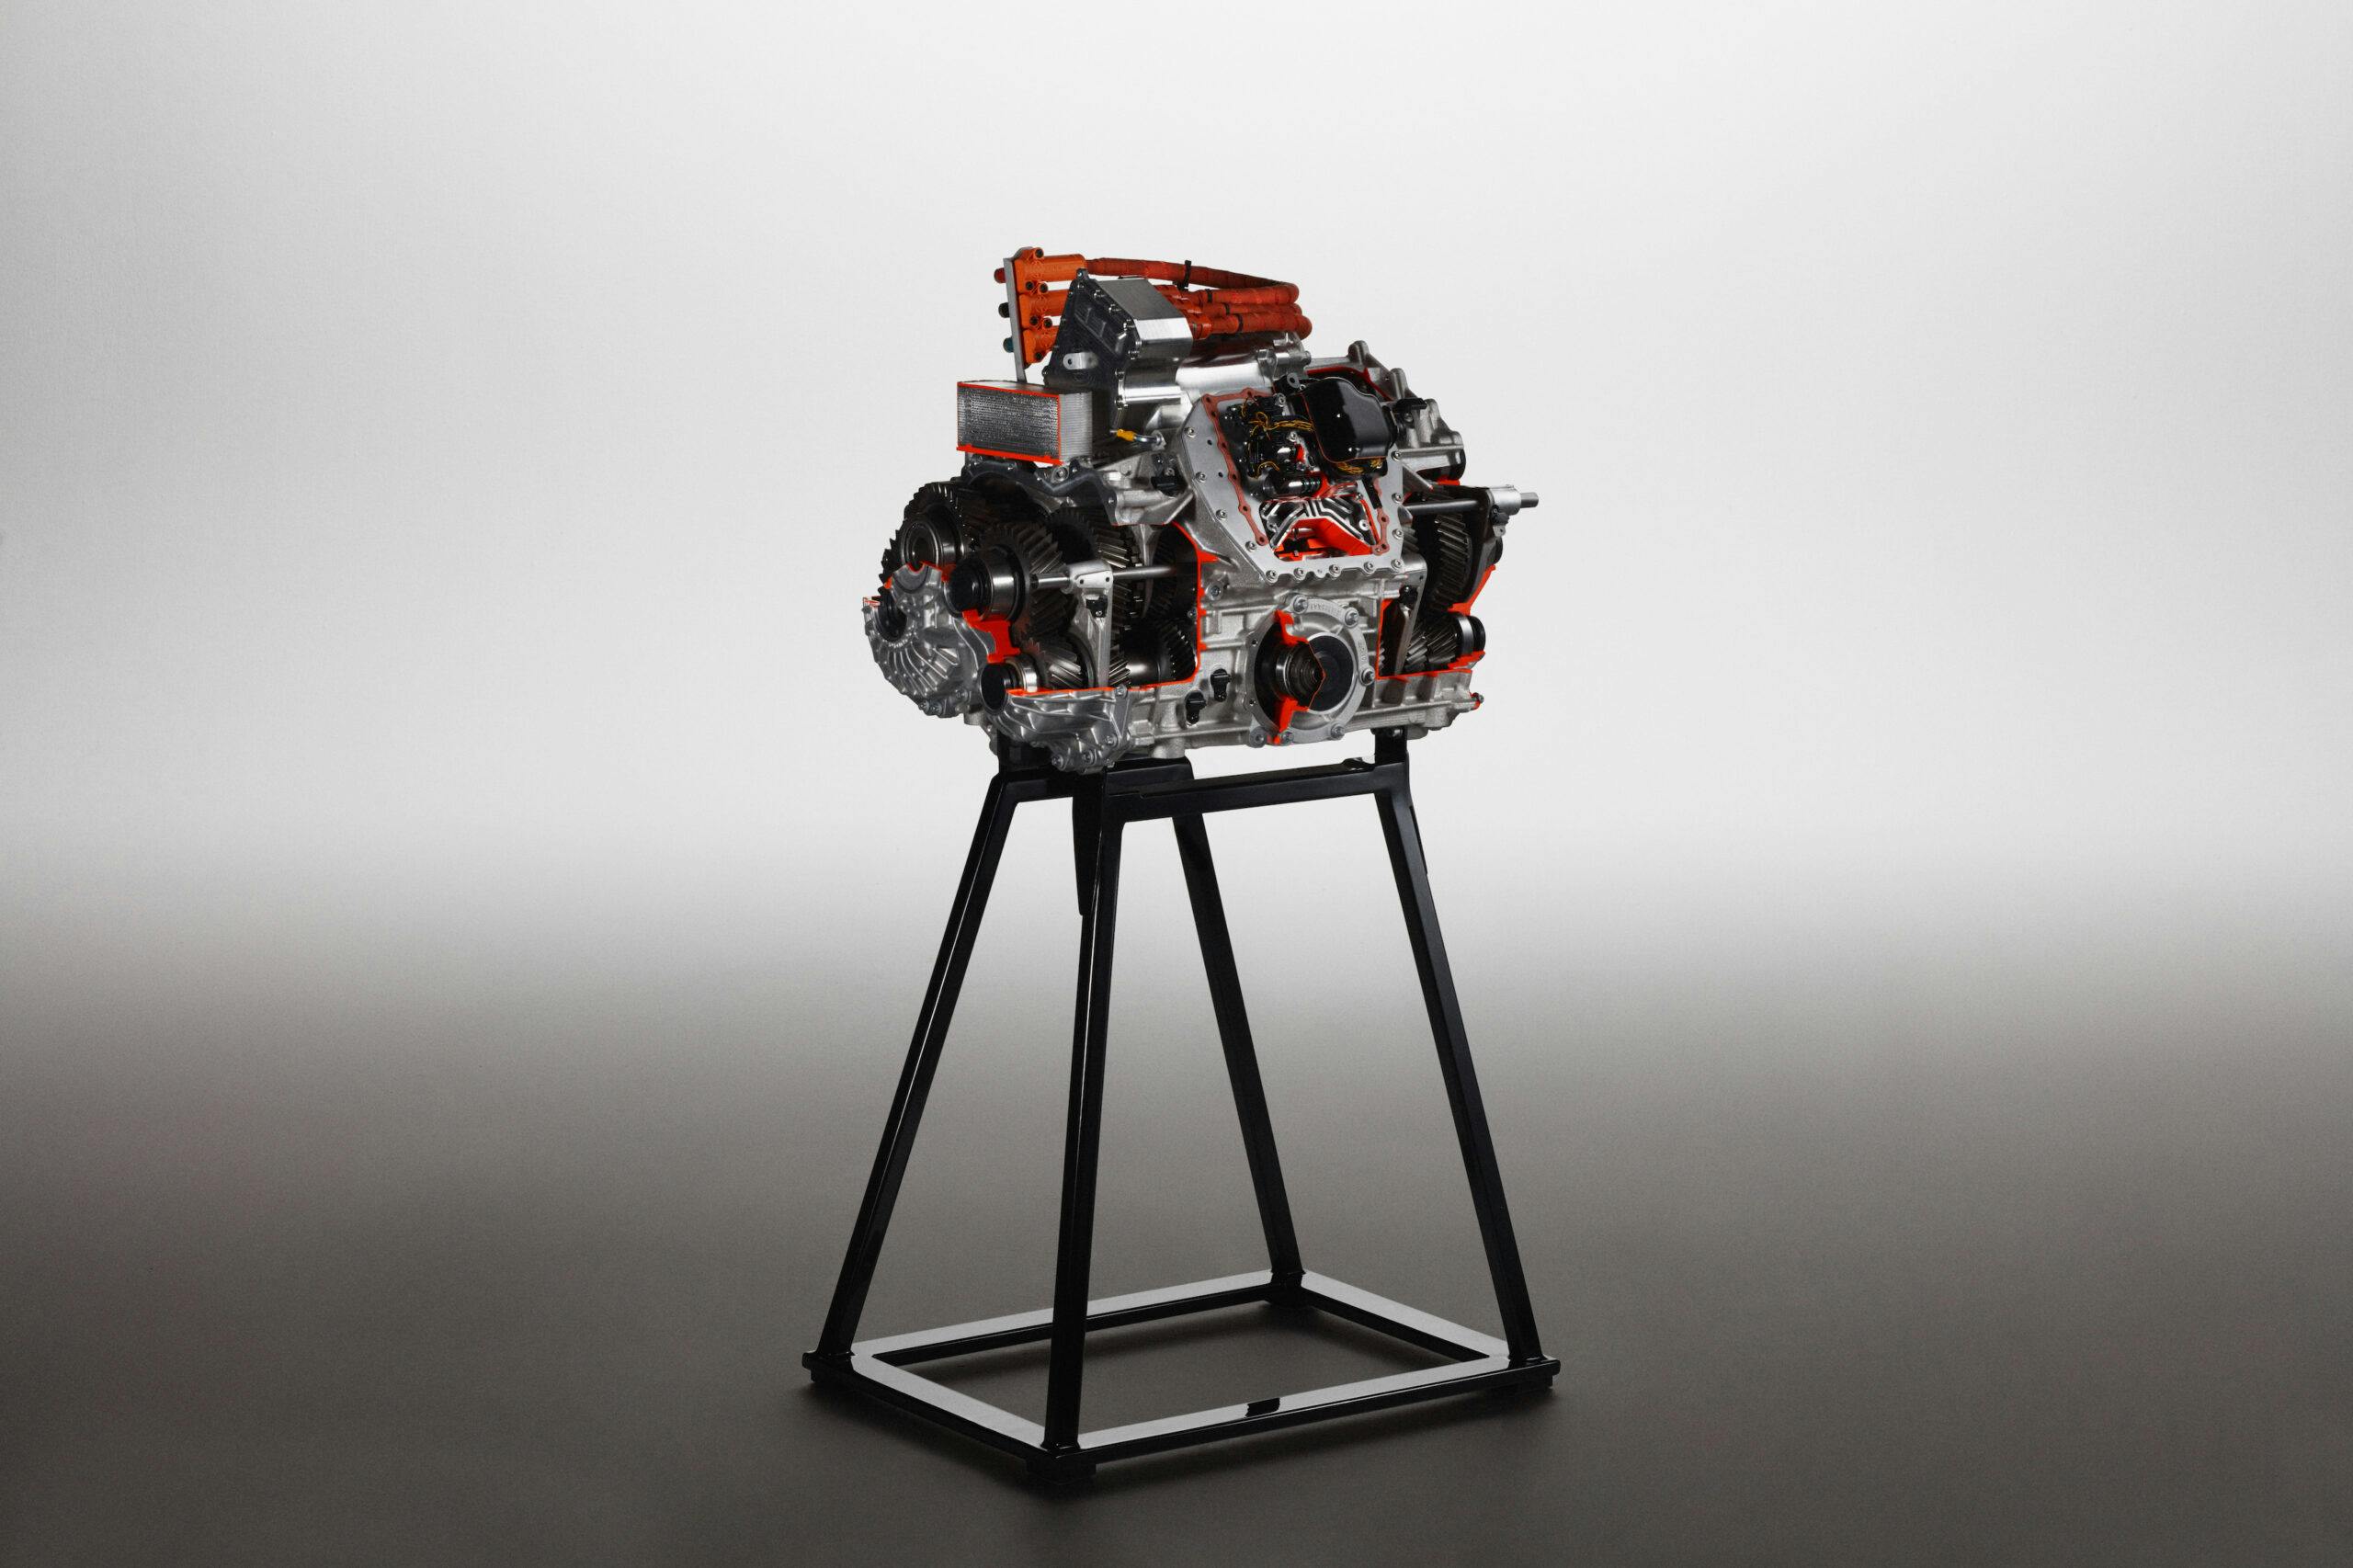 Lamborghini LB744 hybrid plug in supercar V-12 engine L545